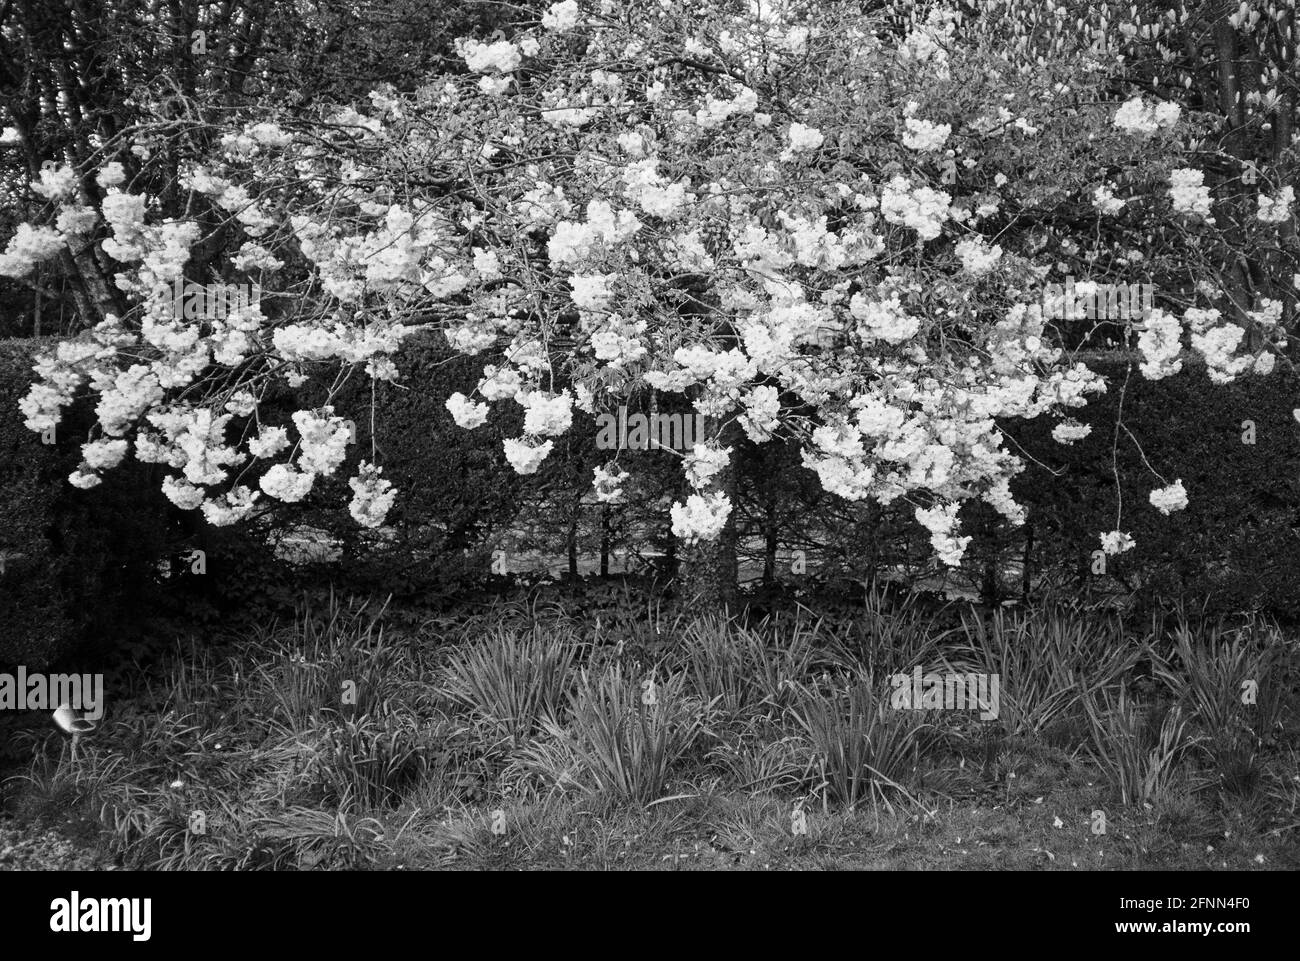 Cerisier d'ornement japonais en fleur, Medstead, Alton, Hampshire. Angleterre. Banque D'Images